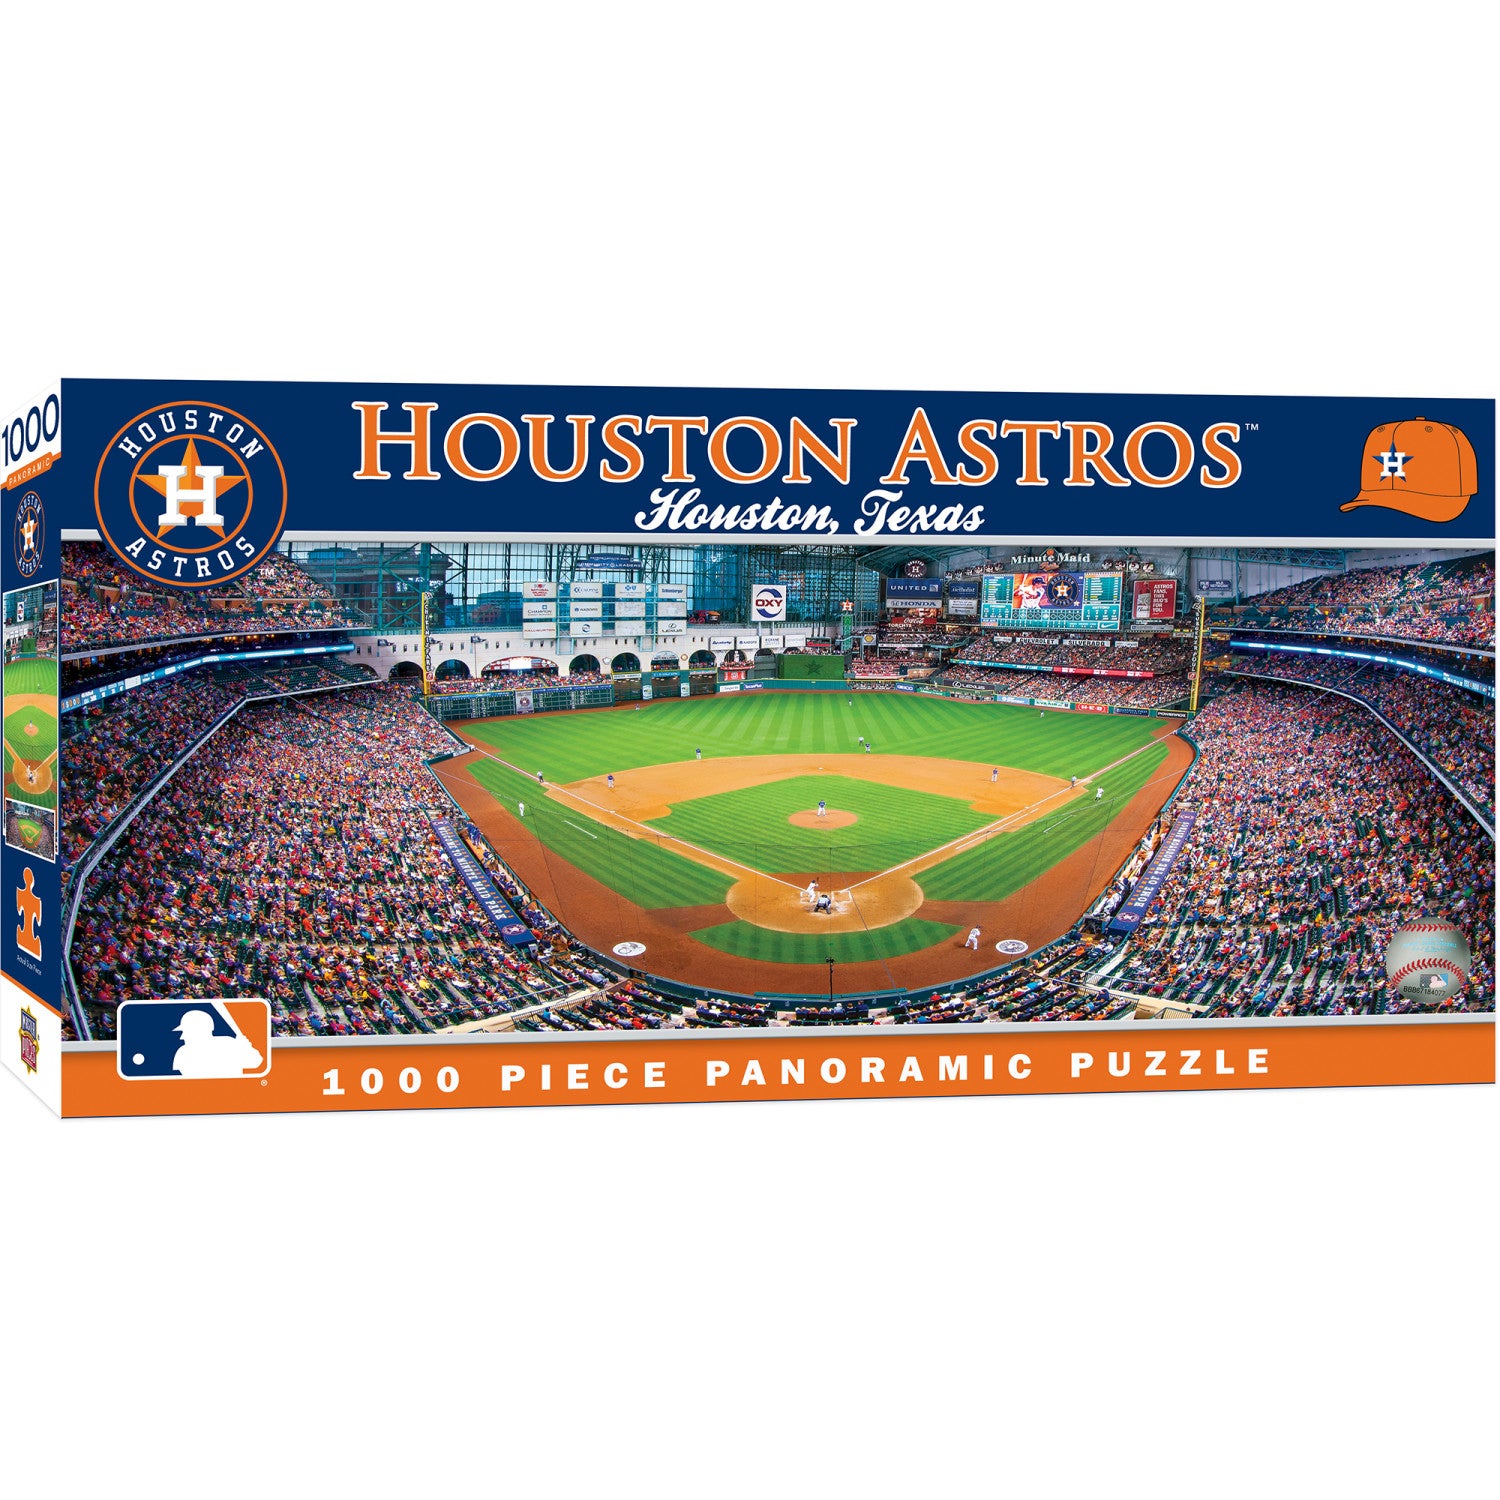 Houston Astros - 1000 Piece Panoramic Puzzle